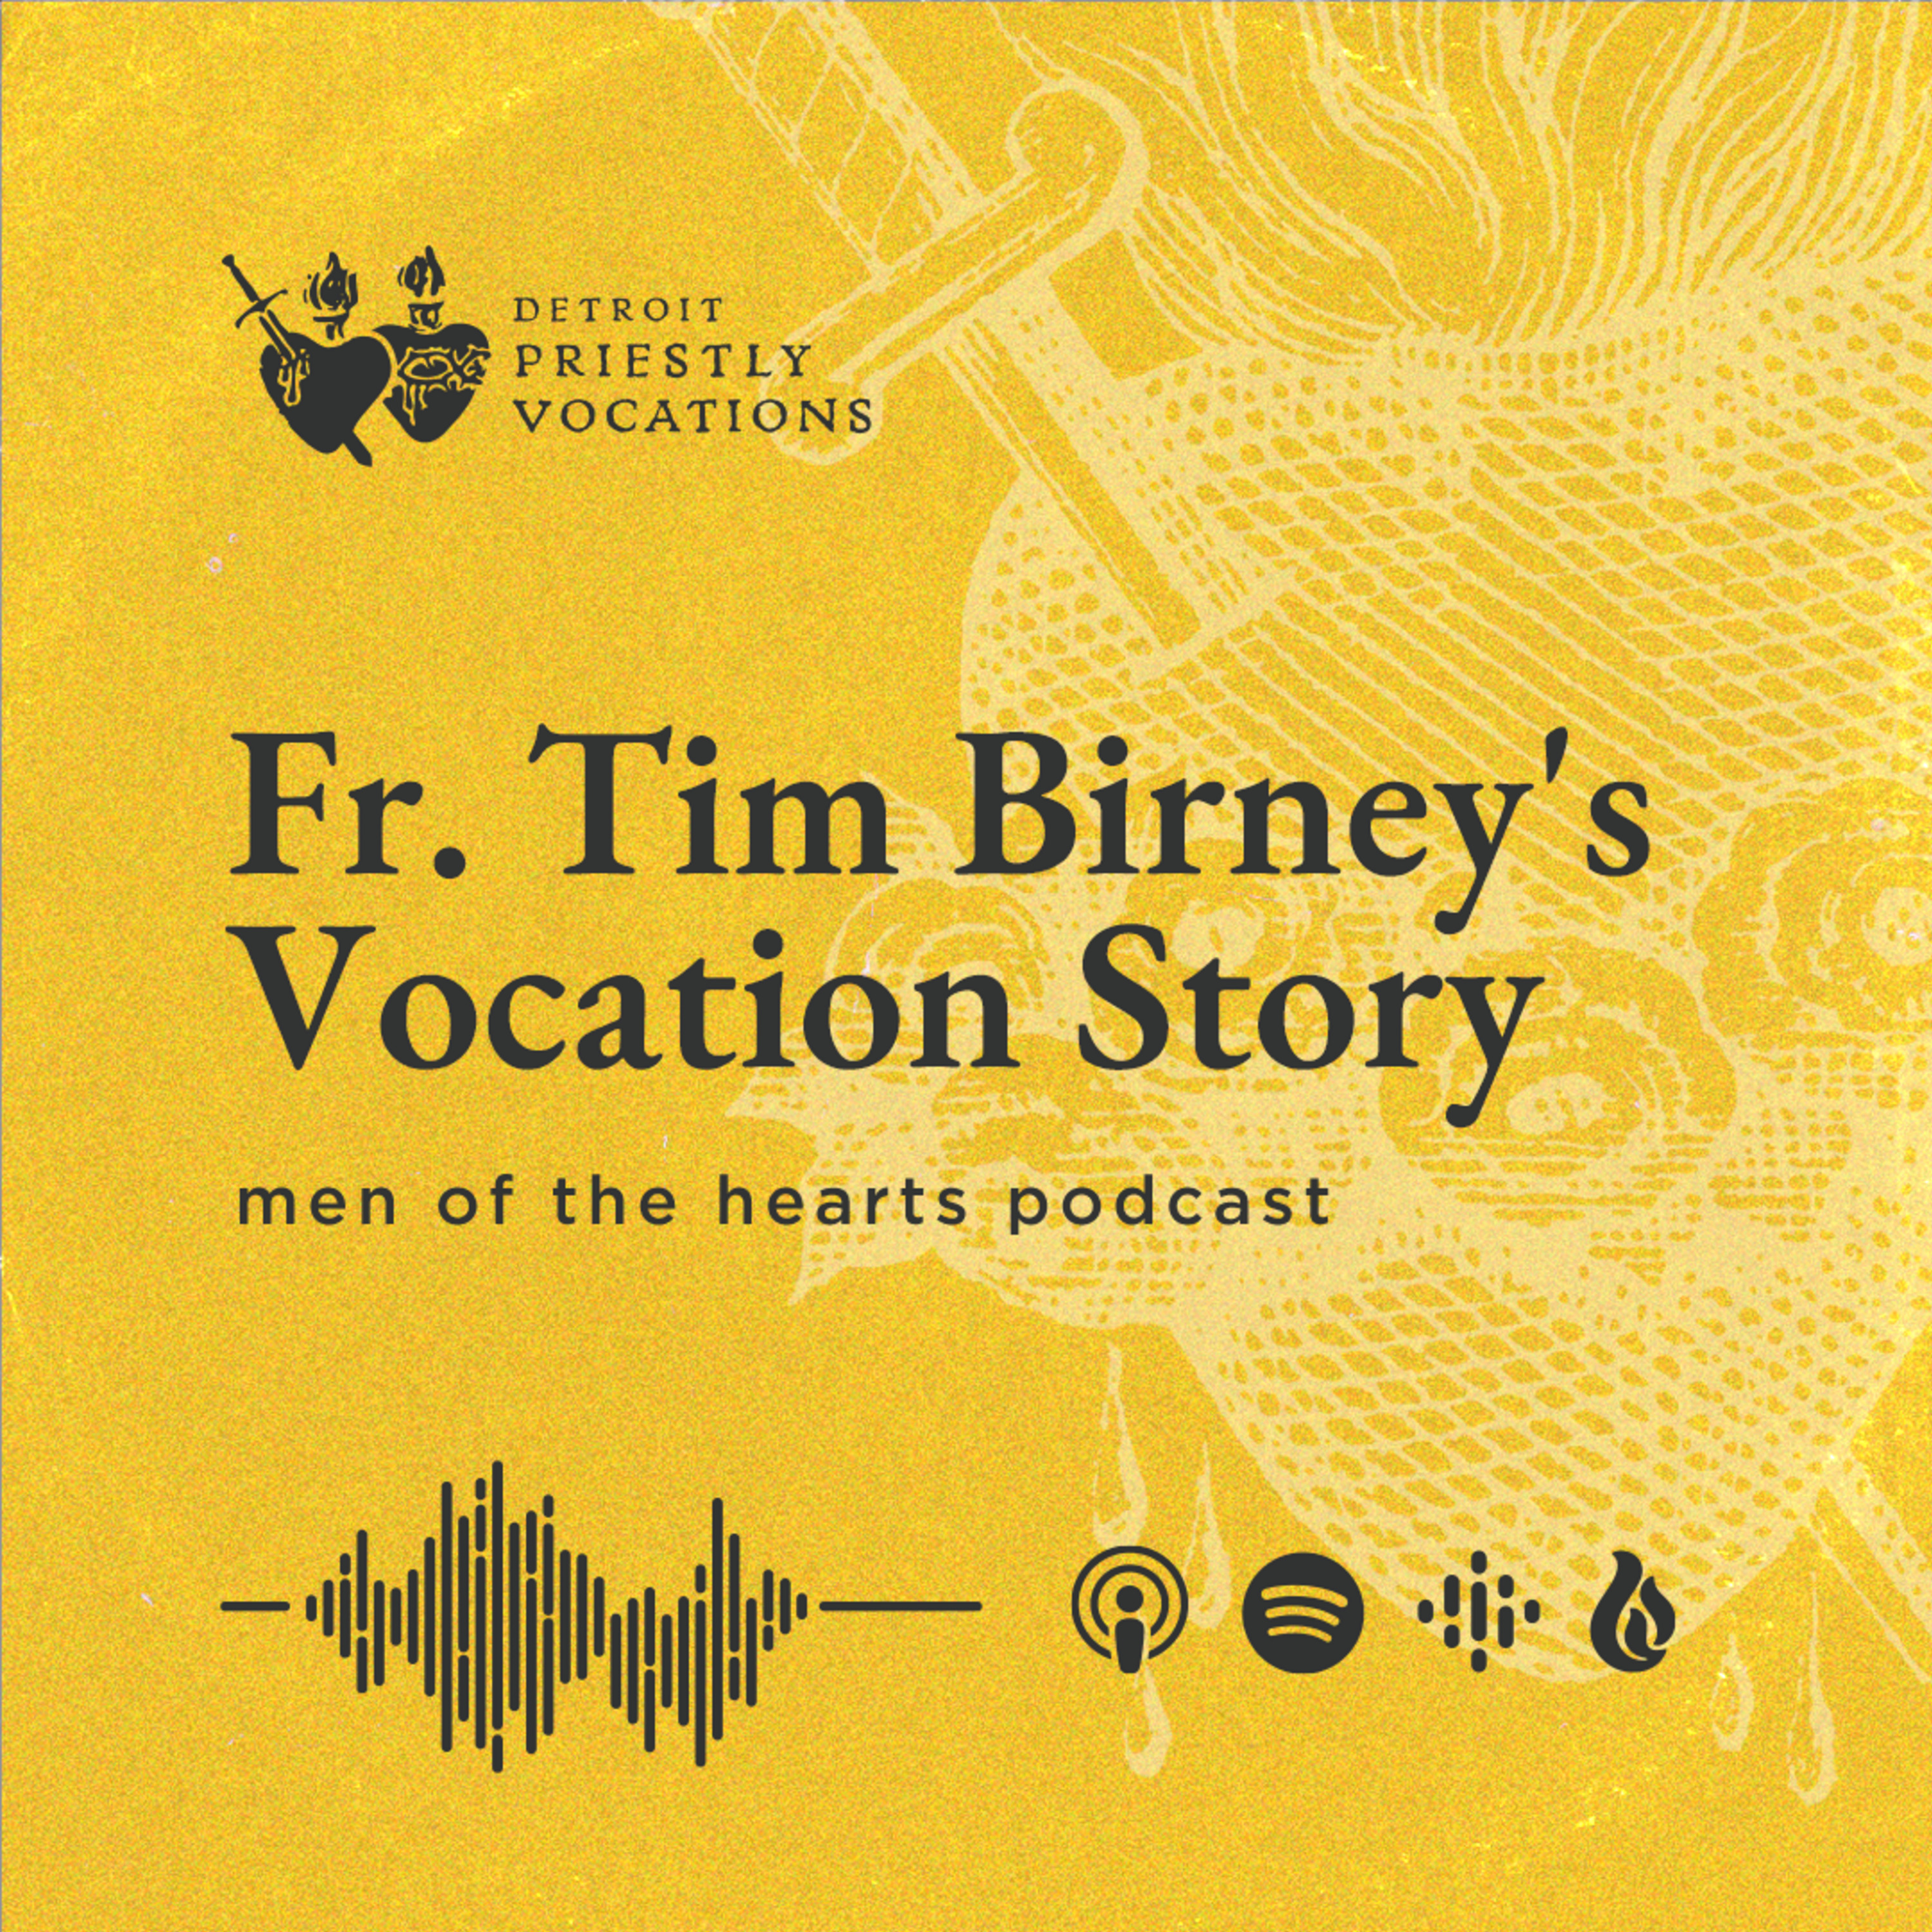 Fr. Tim Birney's Vocation Story